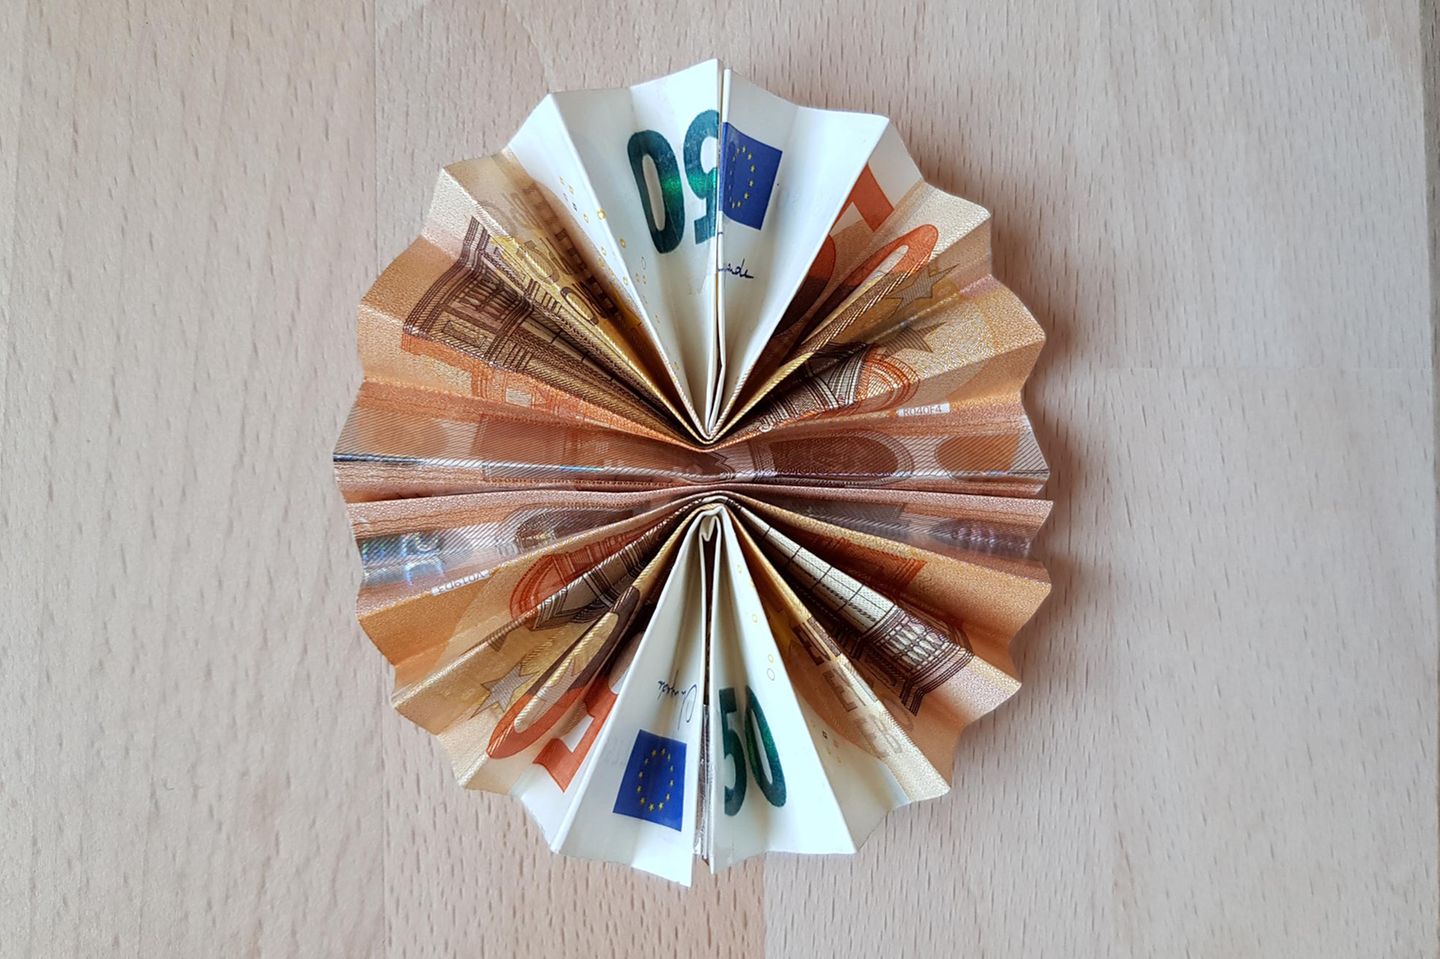 Geldscheine zur Sonne falten: Origami-Sonne aus Geldscheinen